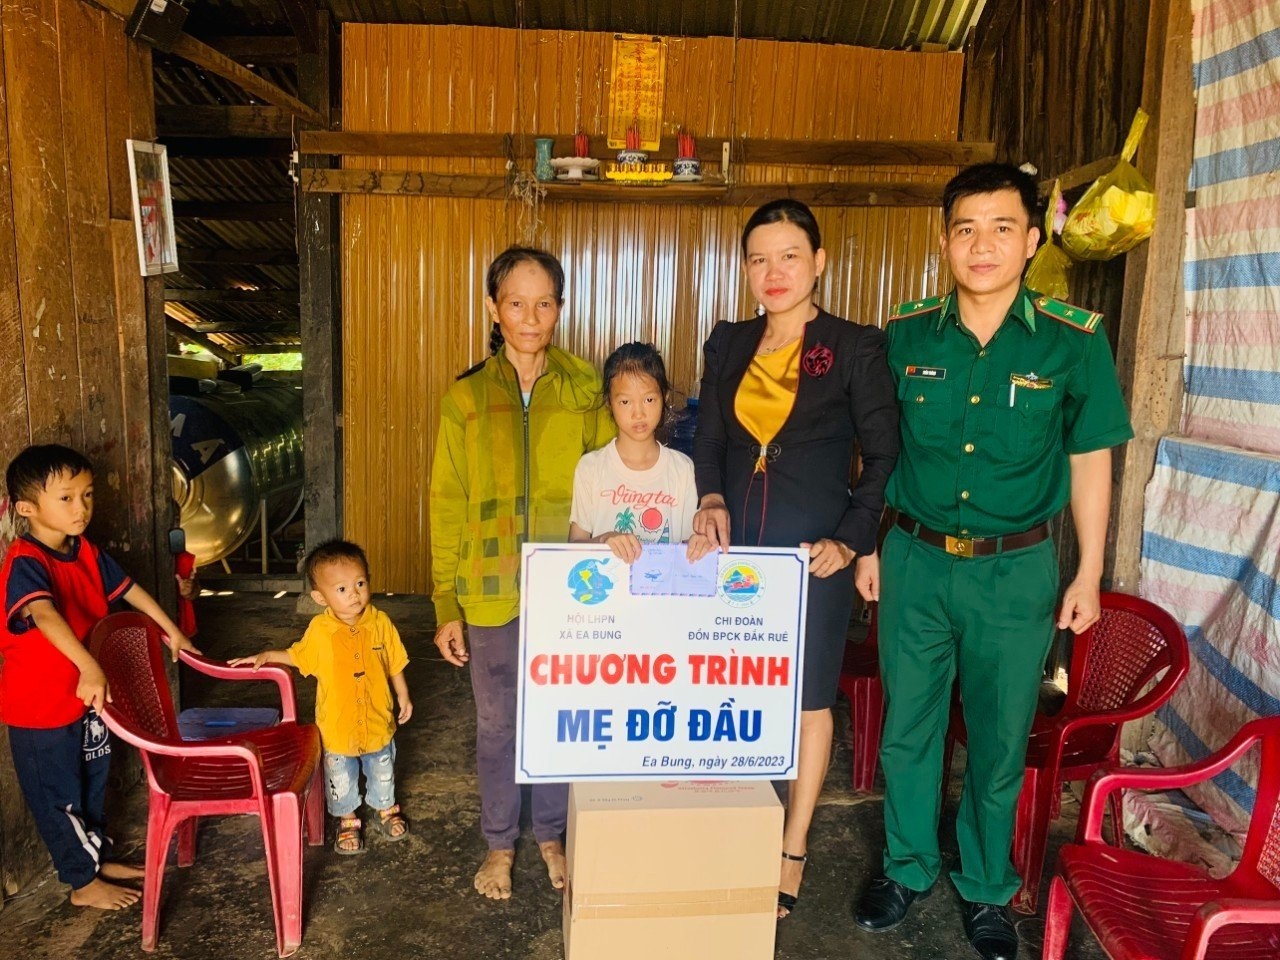 Đồn Biên phòng Cửa khẩu Đắk Ruê và Hội Phụ nữ xã Ea Bung nhận đỡ đầu cháu Nguyễn Gia Hân